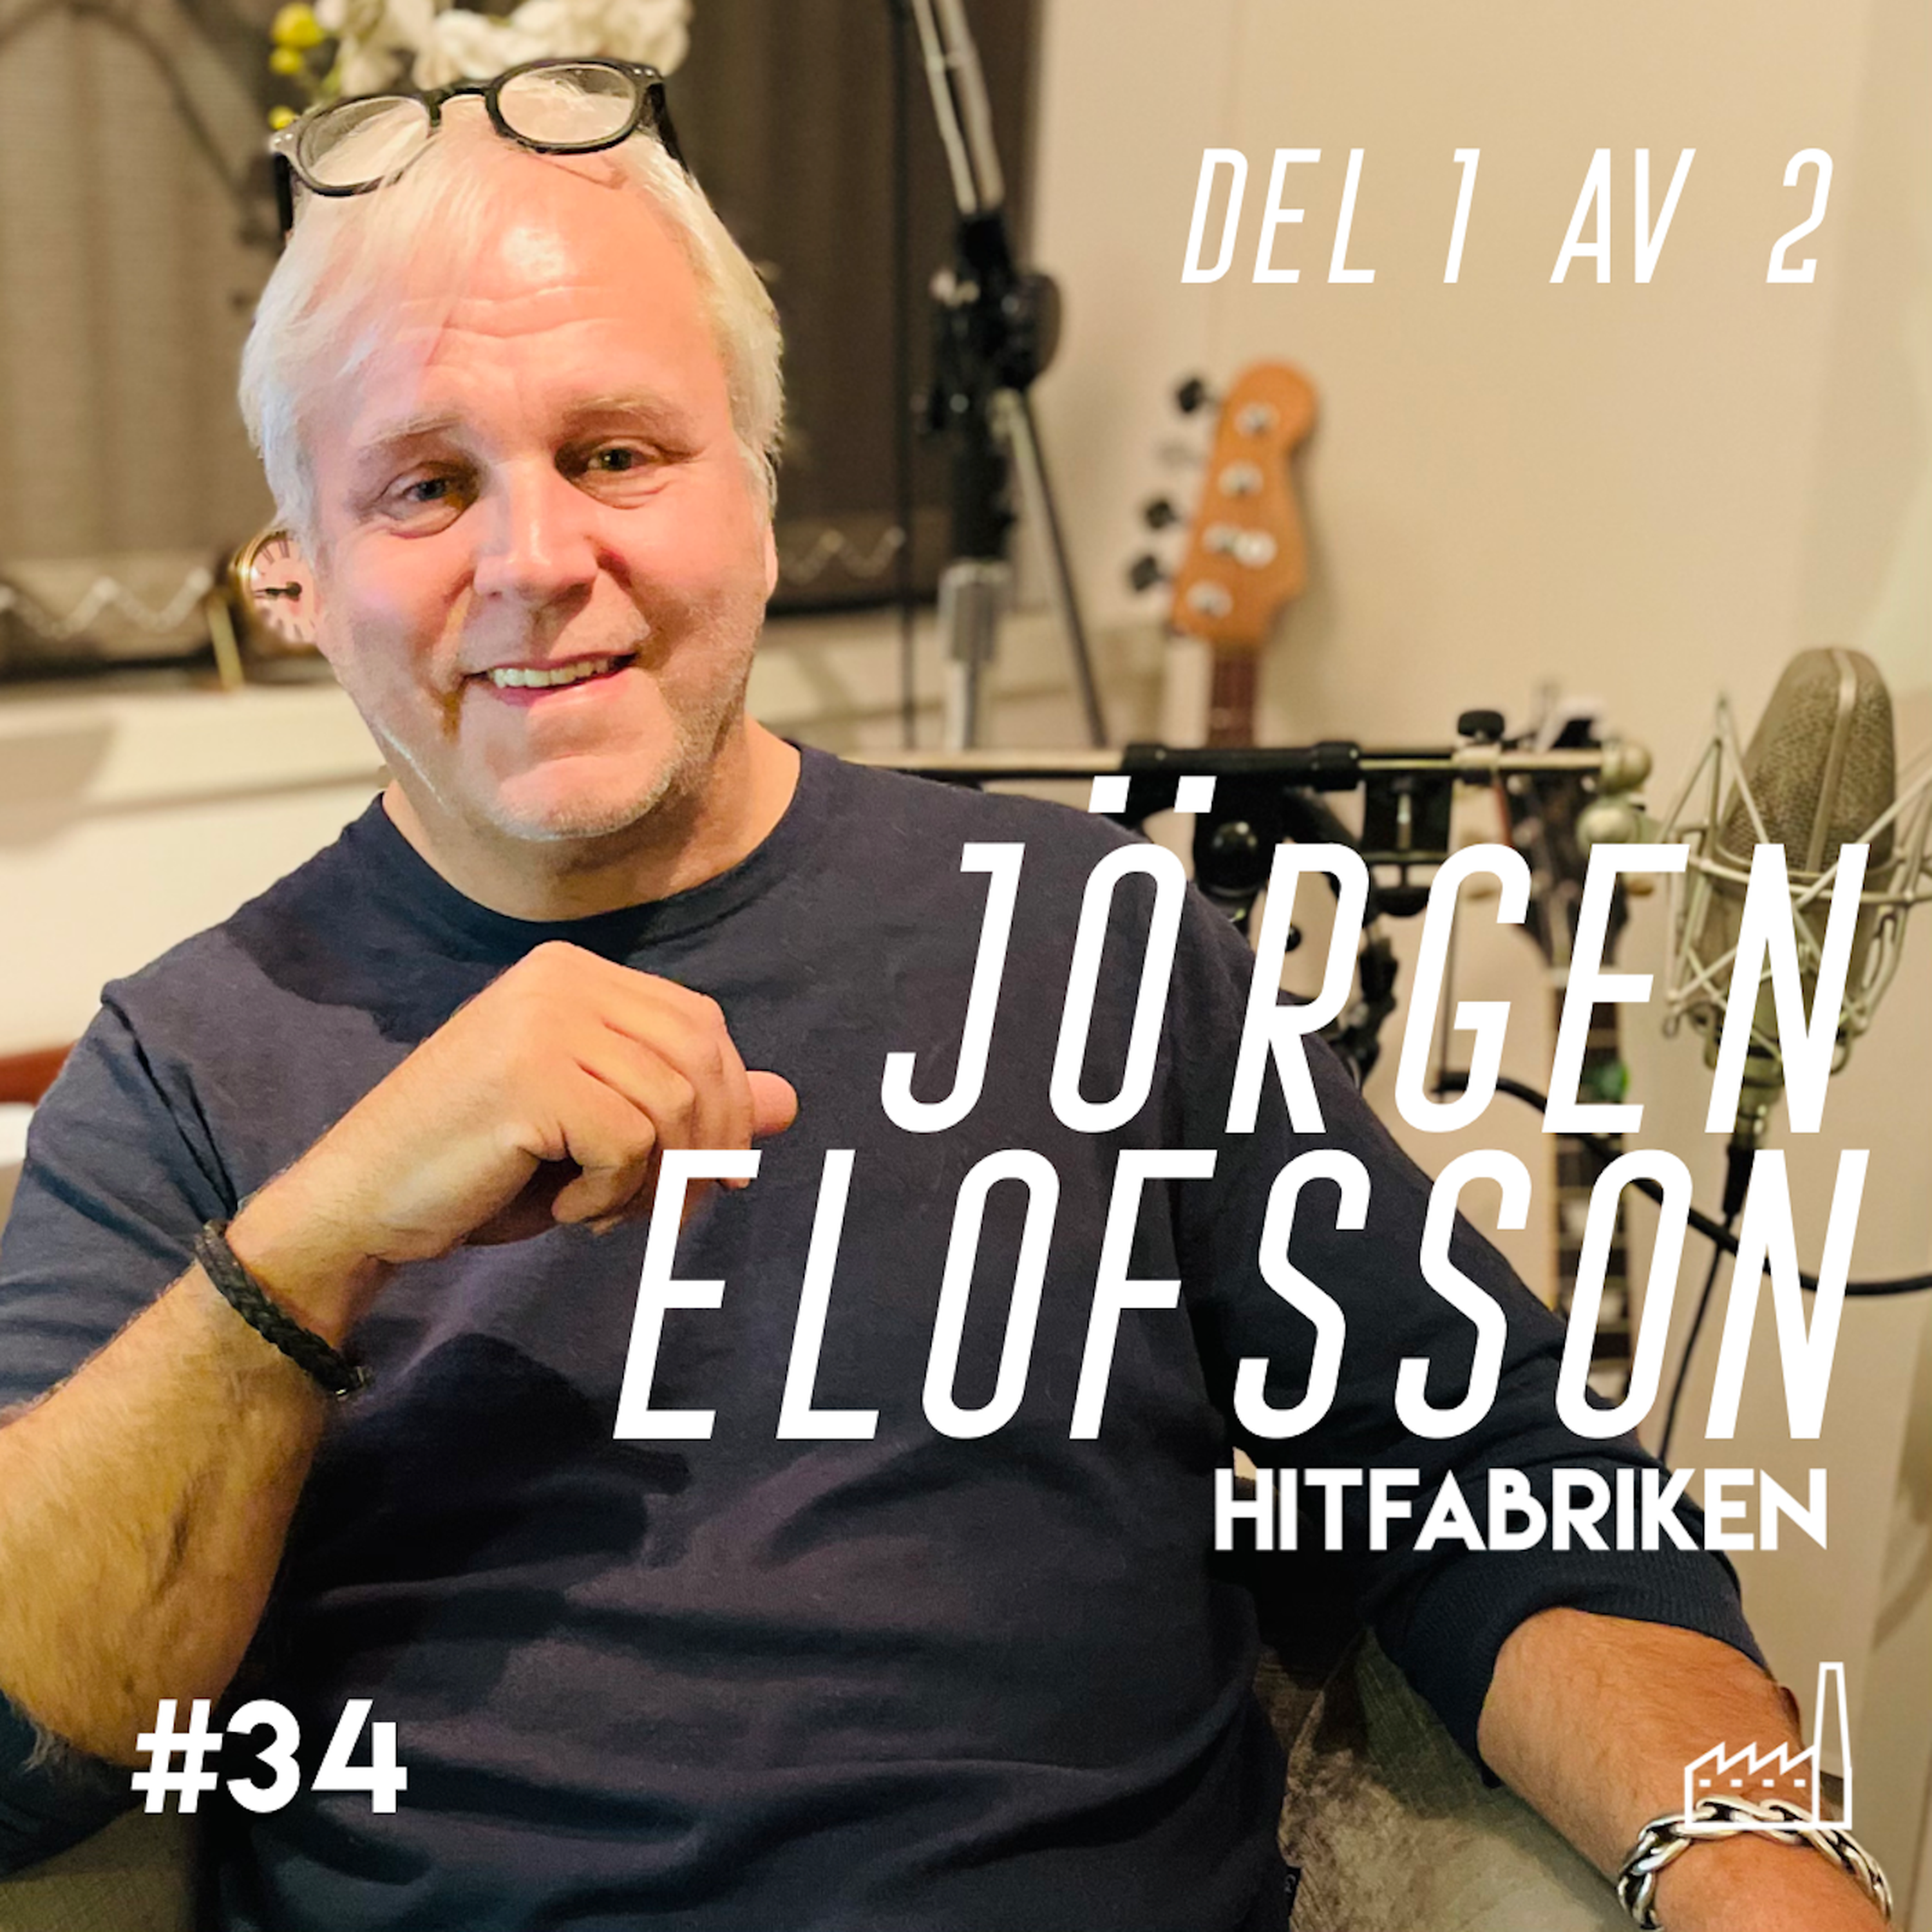 34. Jörgen Elofsson, del 1 av 2